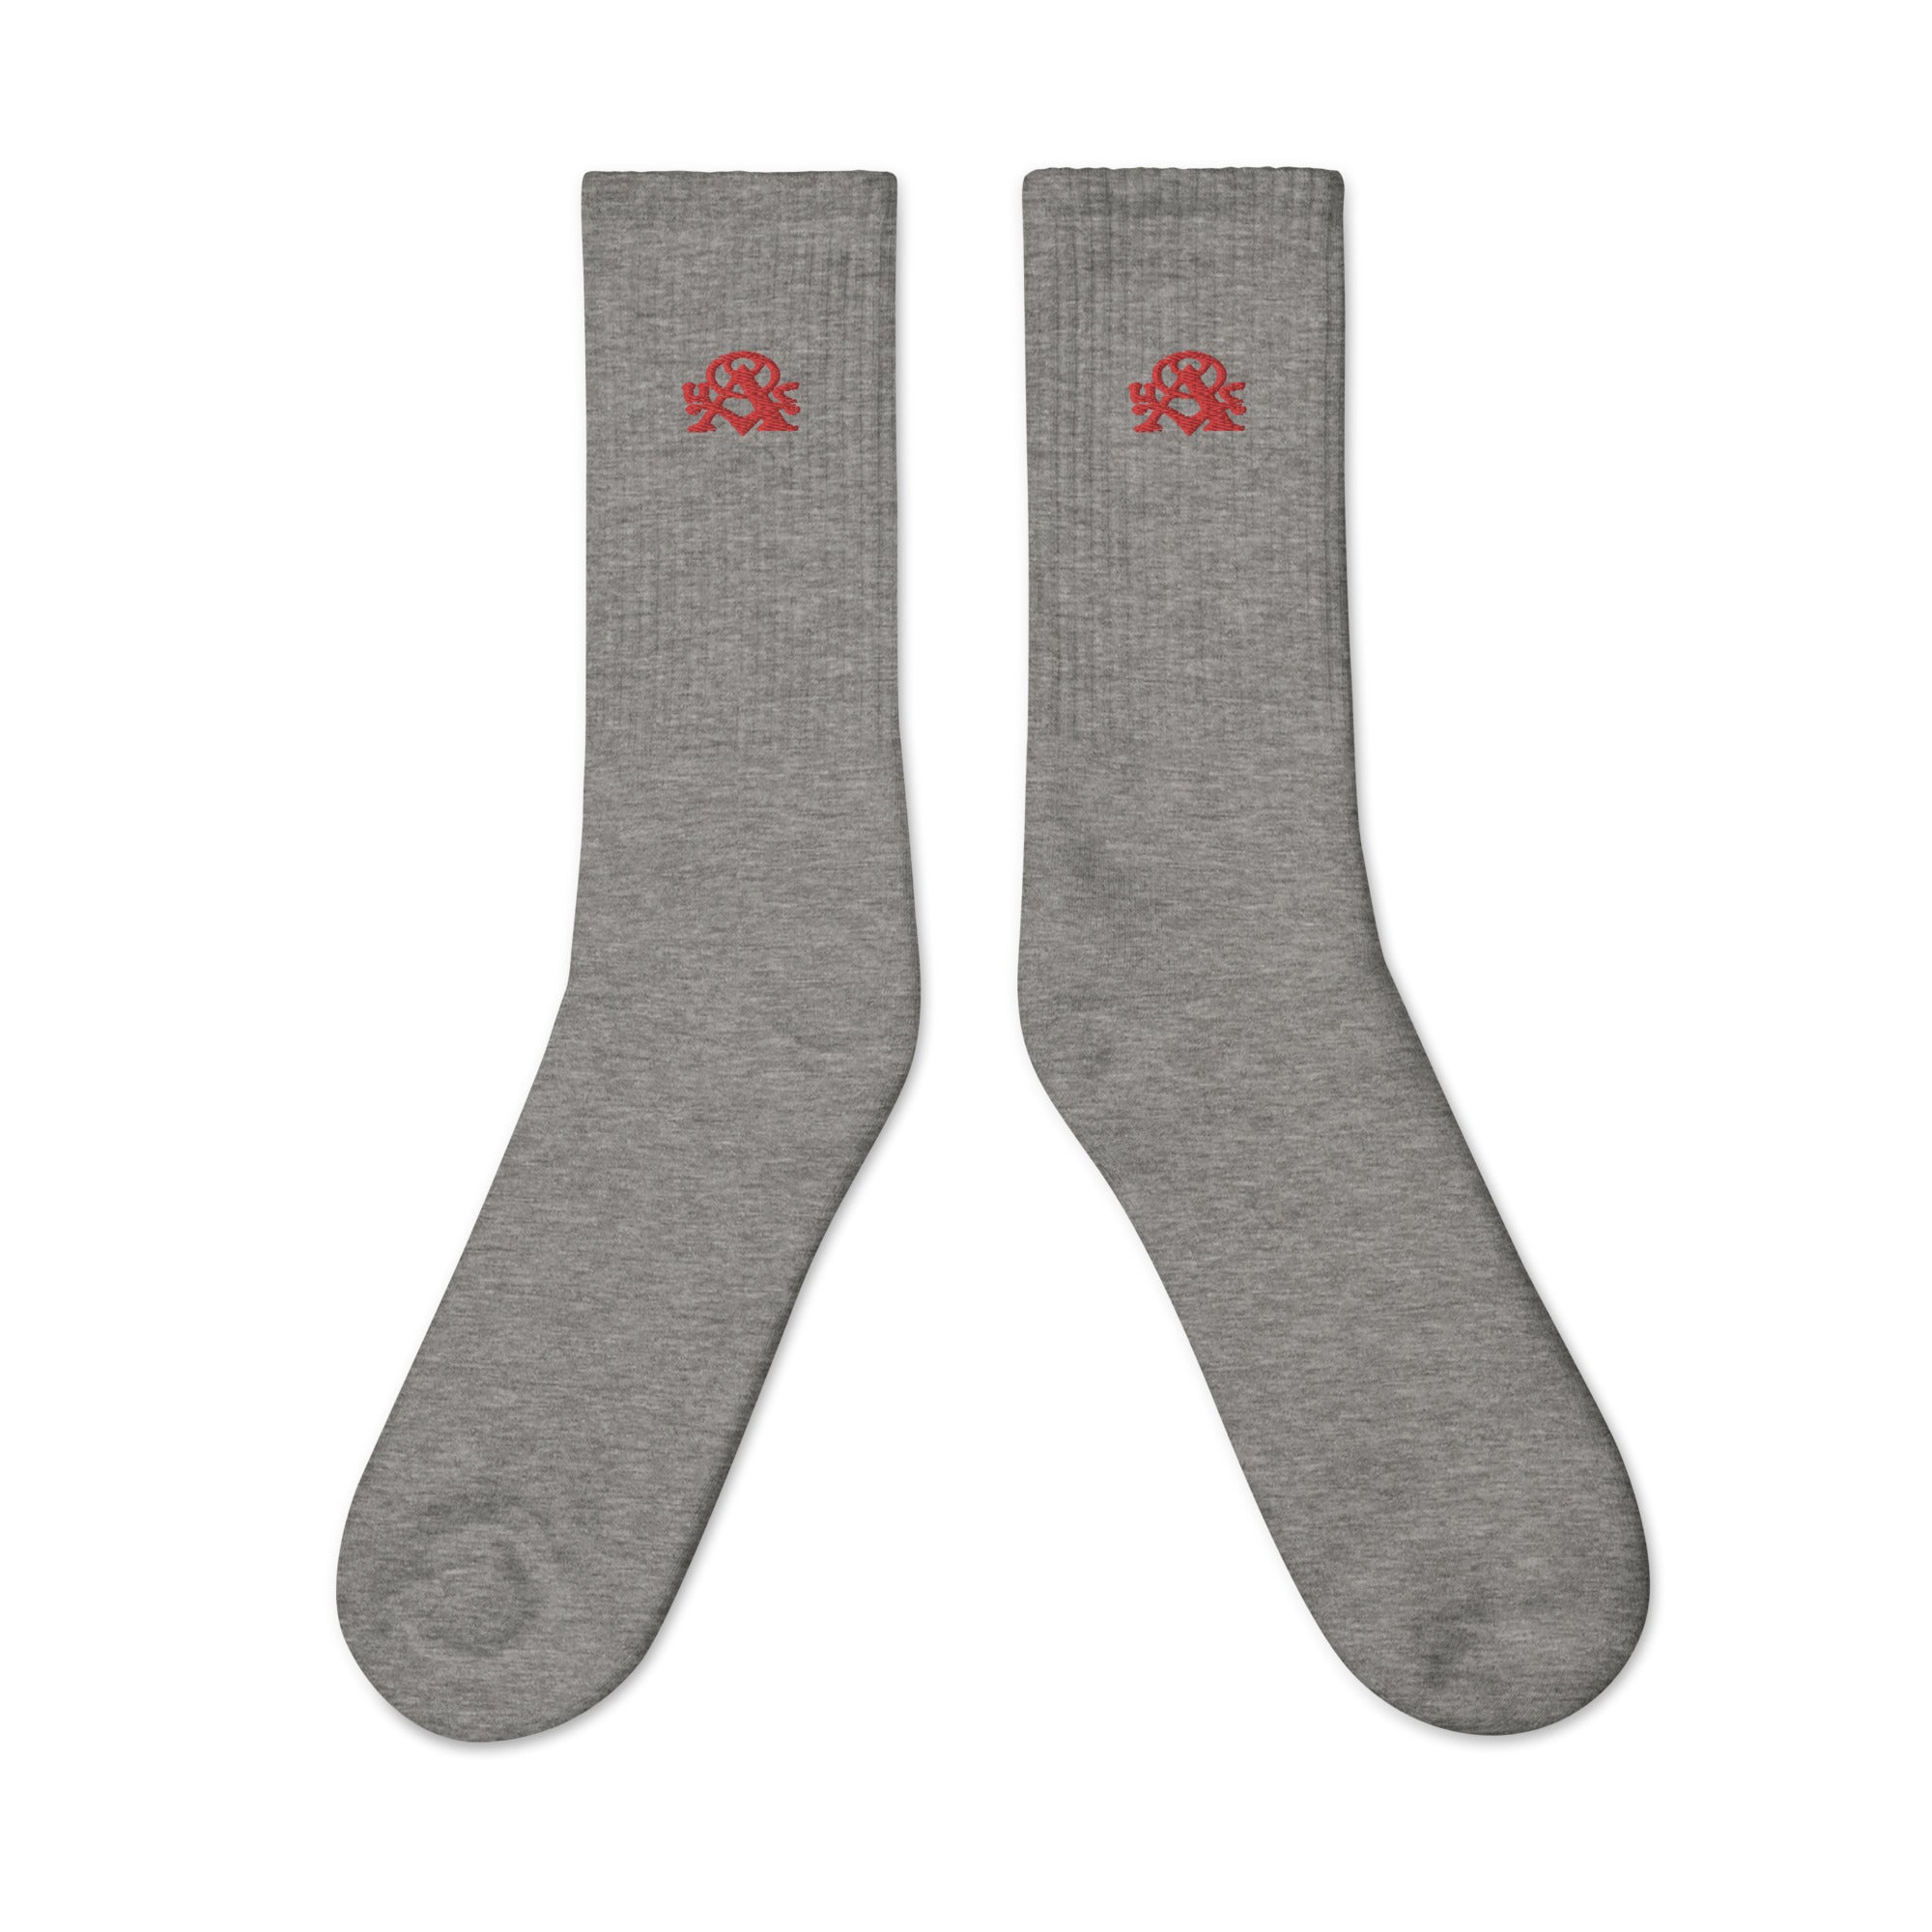 Alchemist Saber Red Logo - Embroidered socks